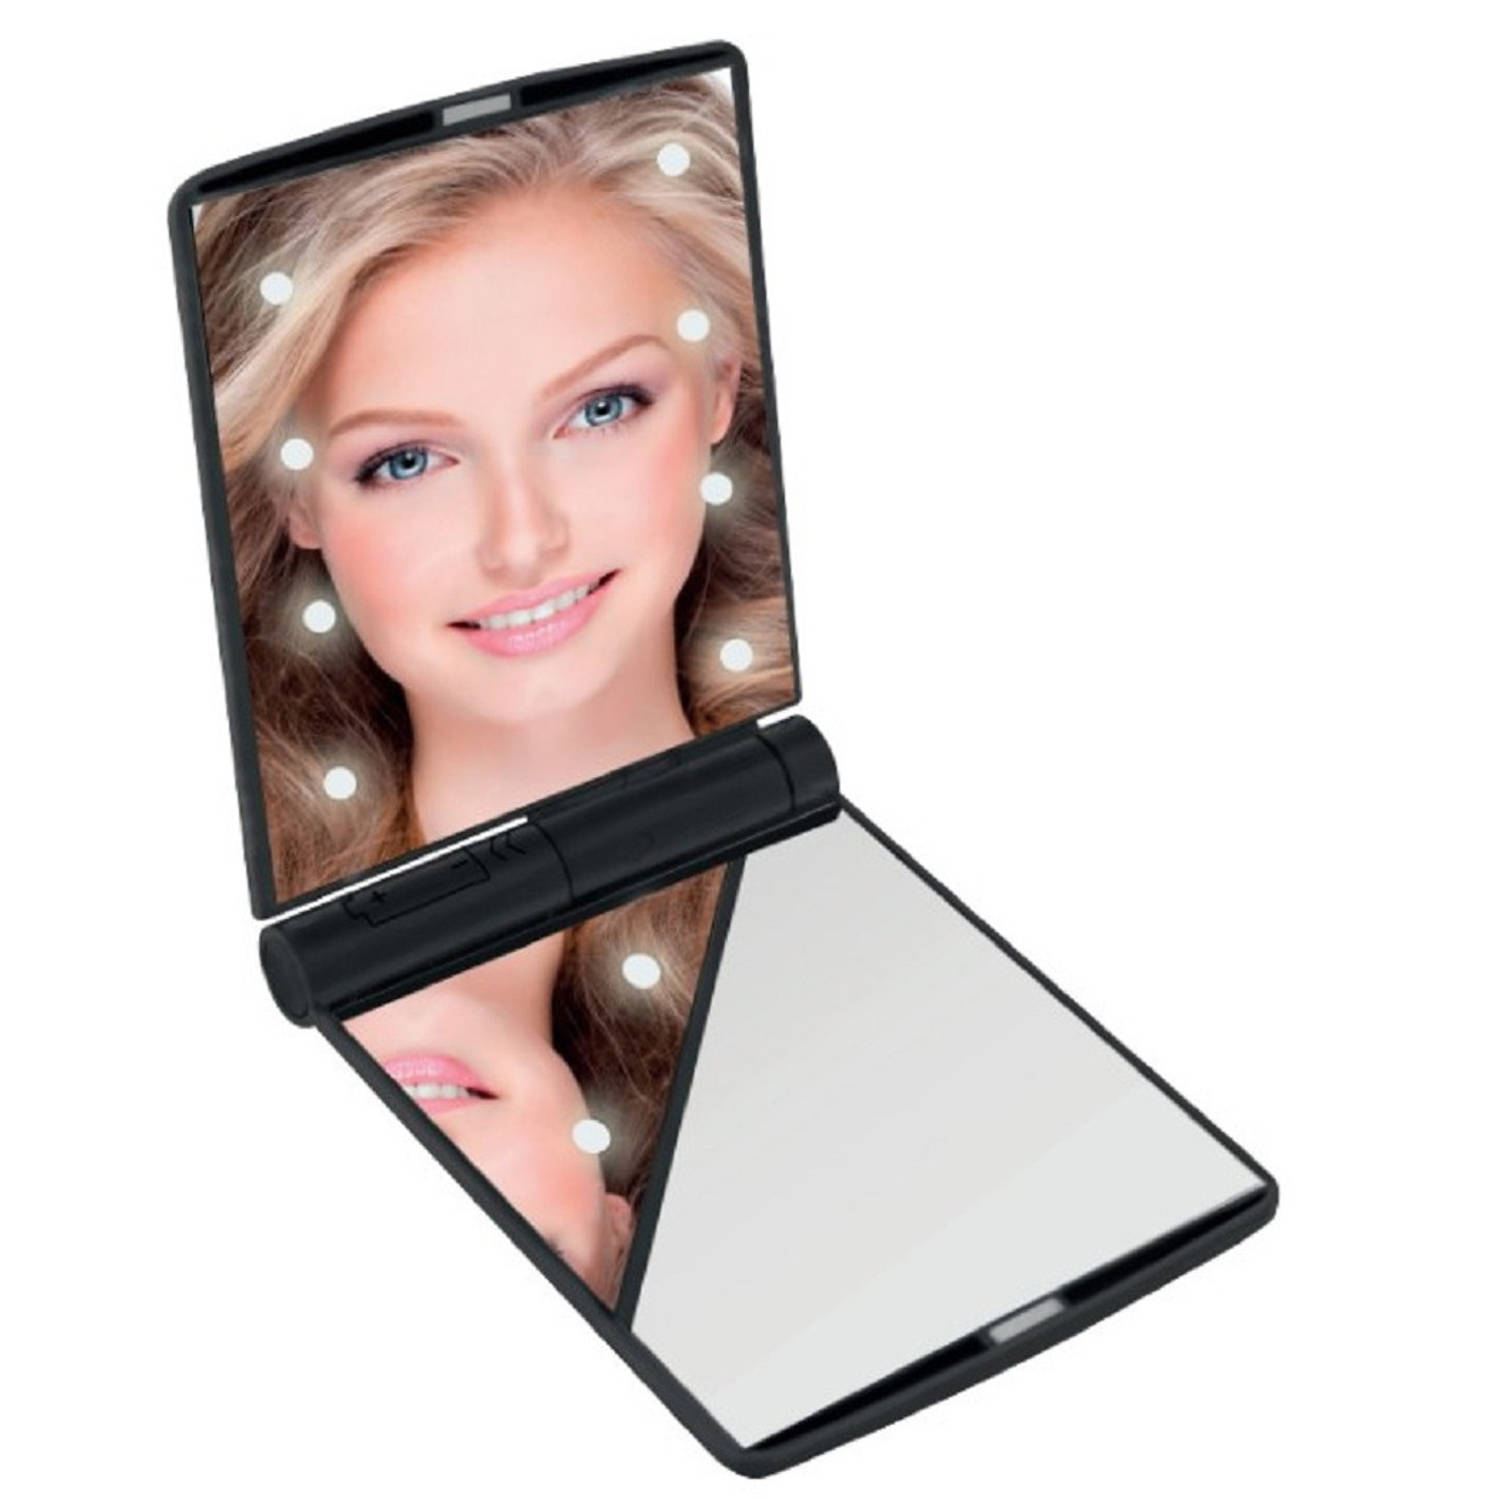 LED Make-up spiegel-handspiegel-zakspiegel zwart 11,5 x 8,5 cm dubbelzijdig Make-up spiegeltjes